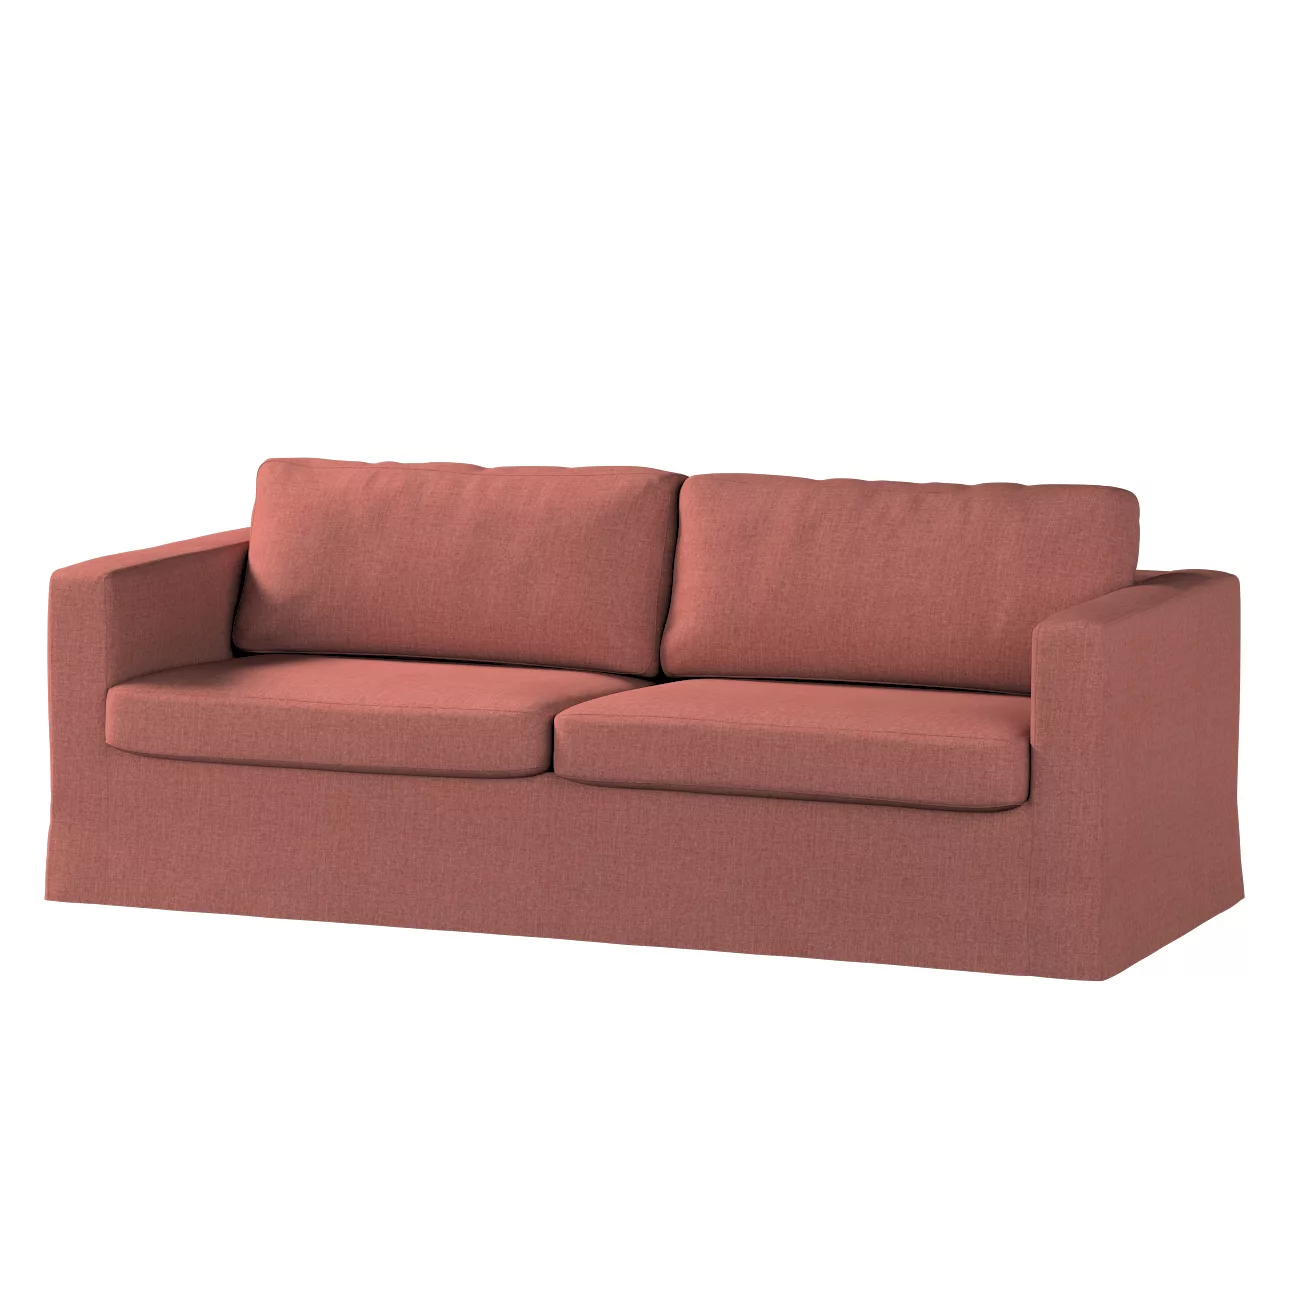 Bezug für Karlstad 3-Sitzer Sofa nicht ausklappbar, lang, cognac braun, Bez günstig online kaufen